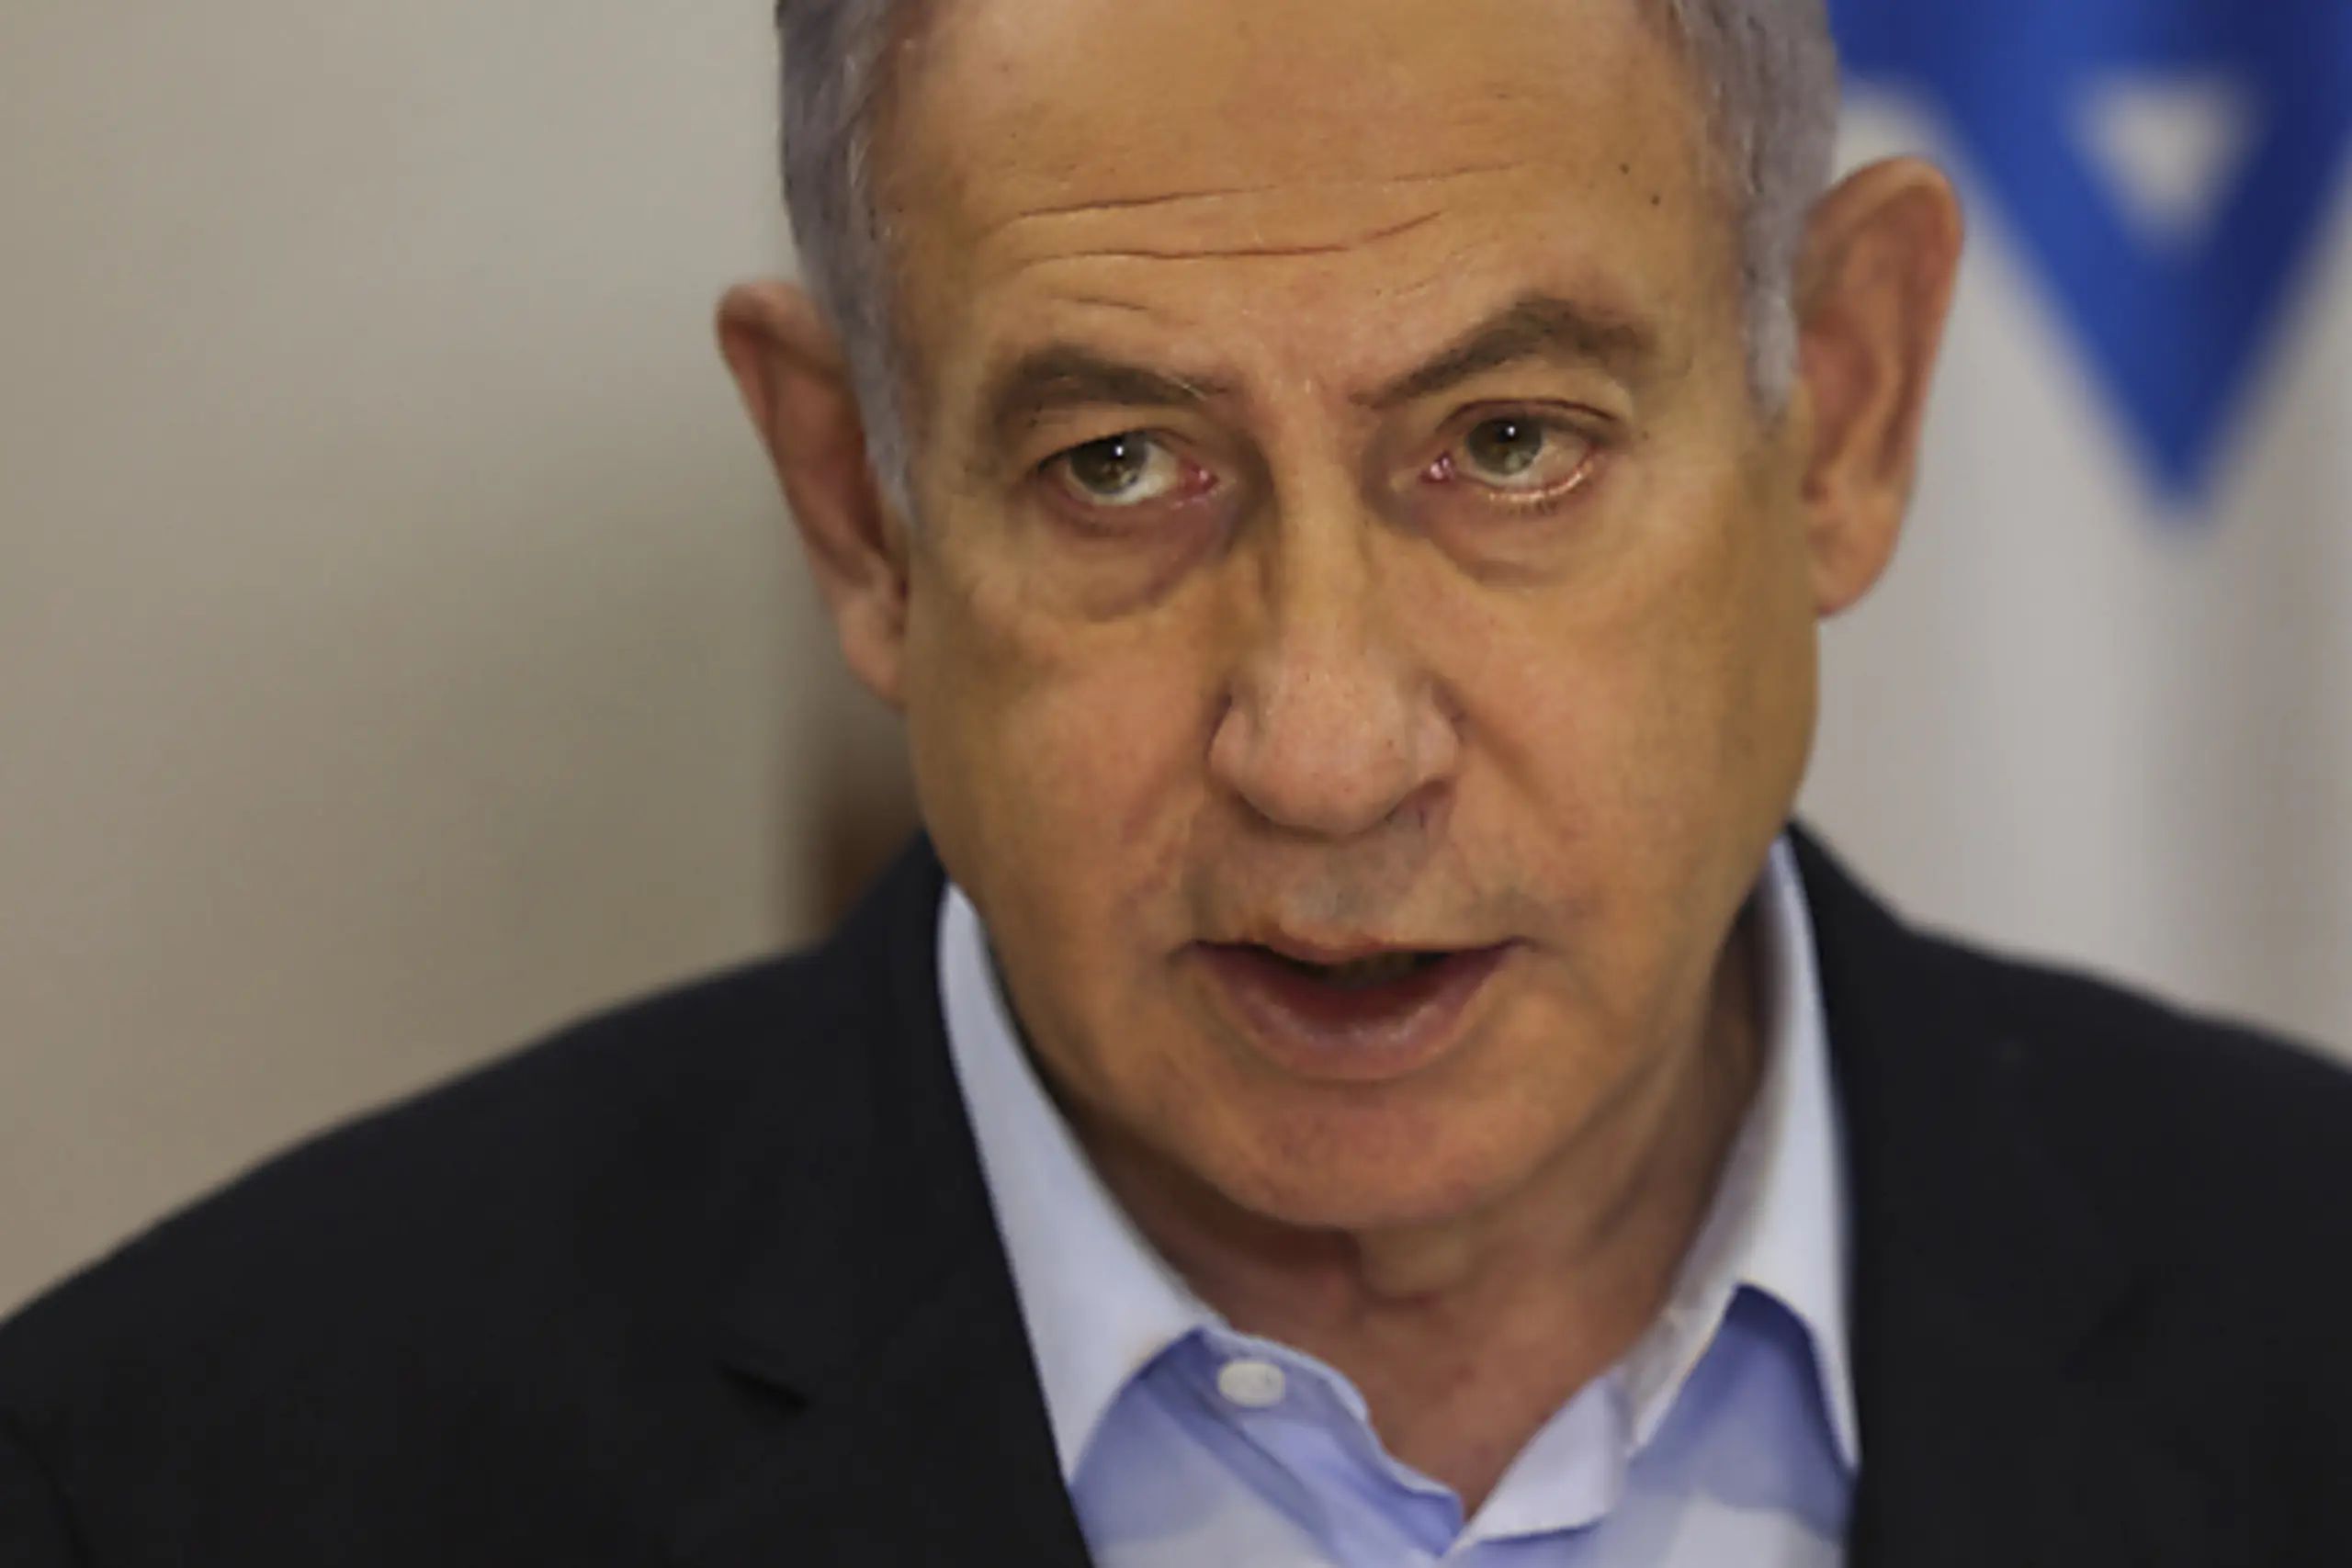 Völkerrechtsverstöße durch Israel unter Premier Benjamin Netanyahu?